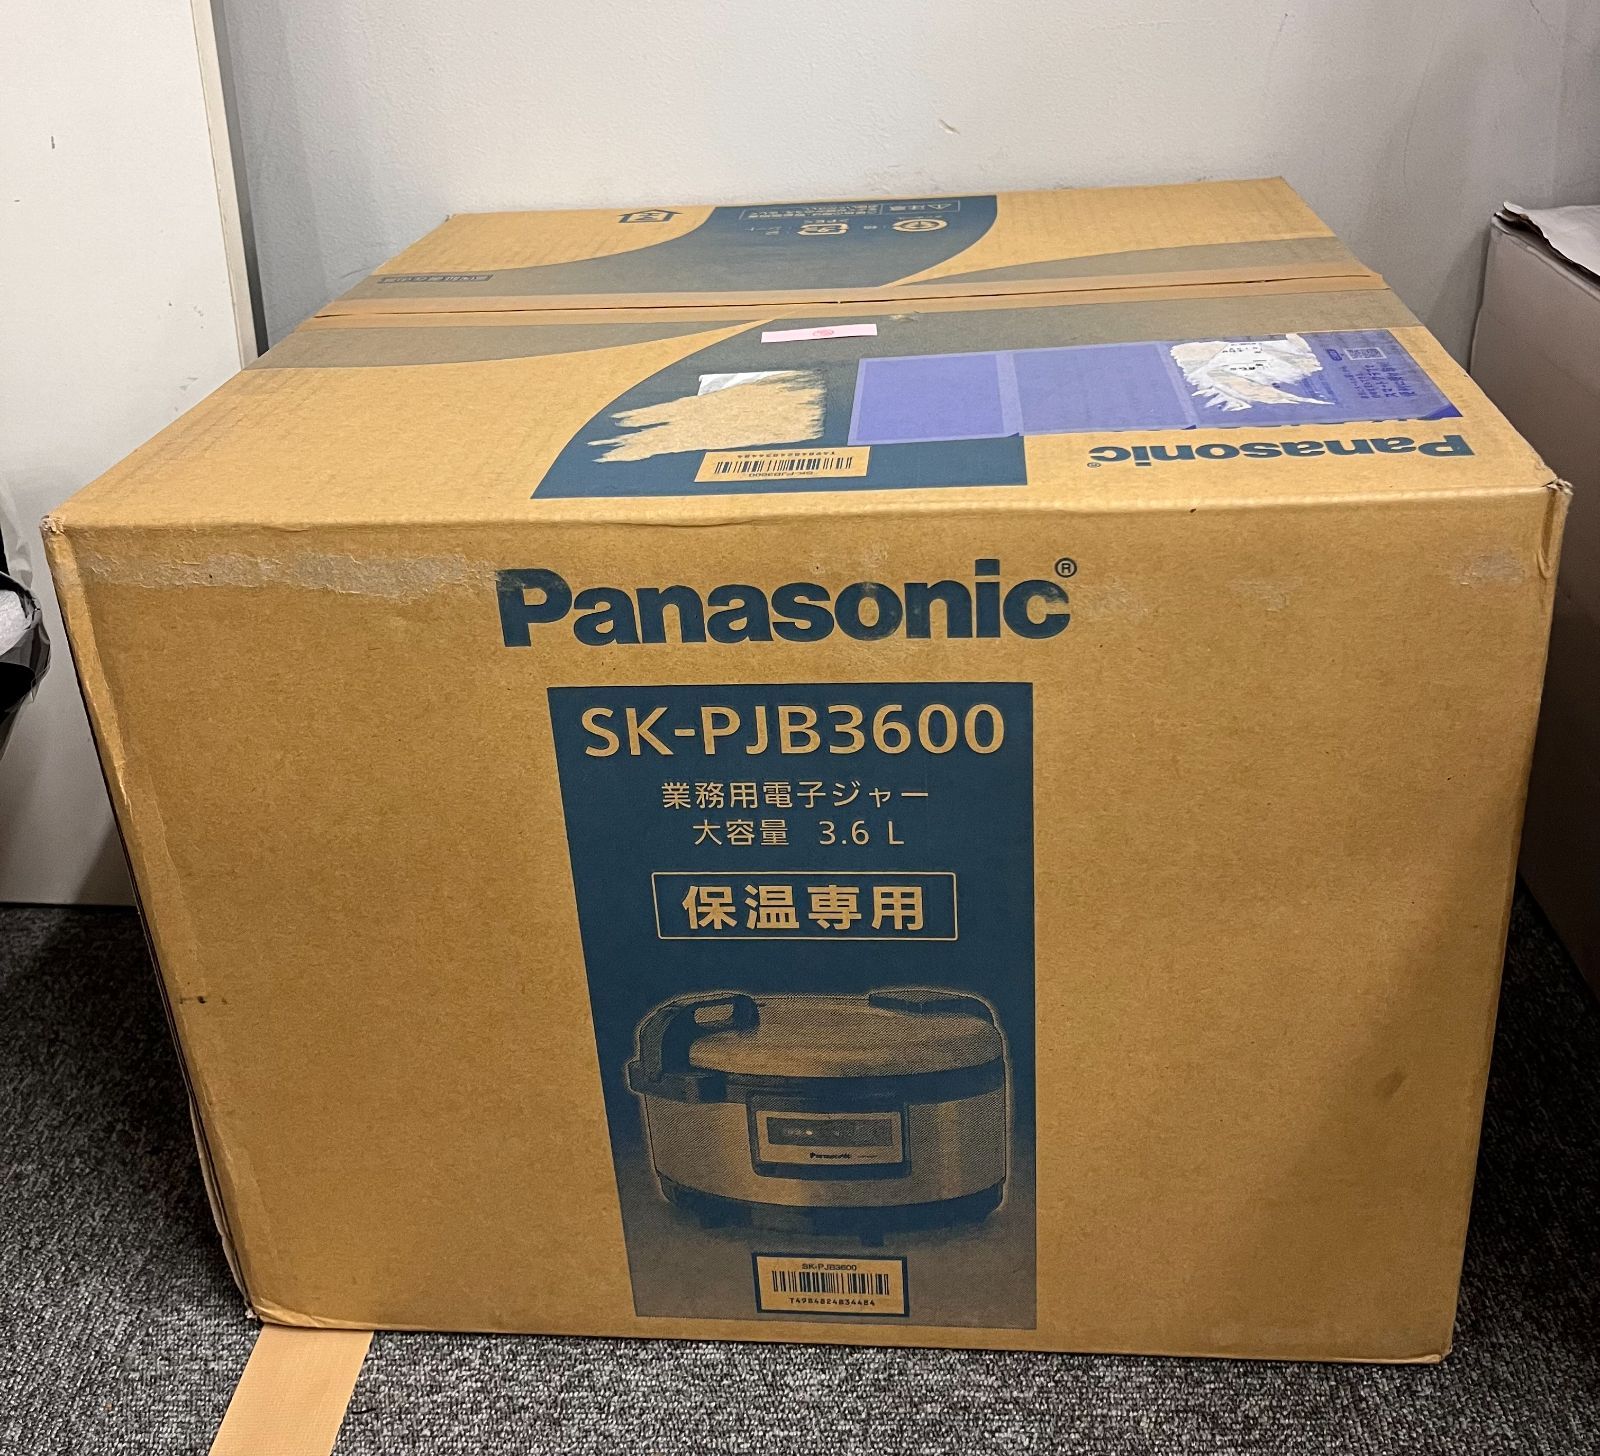 信託 パナソニック 業務用電子ジャー 保温専用 3.6L SK-PJB3600